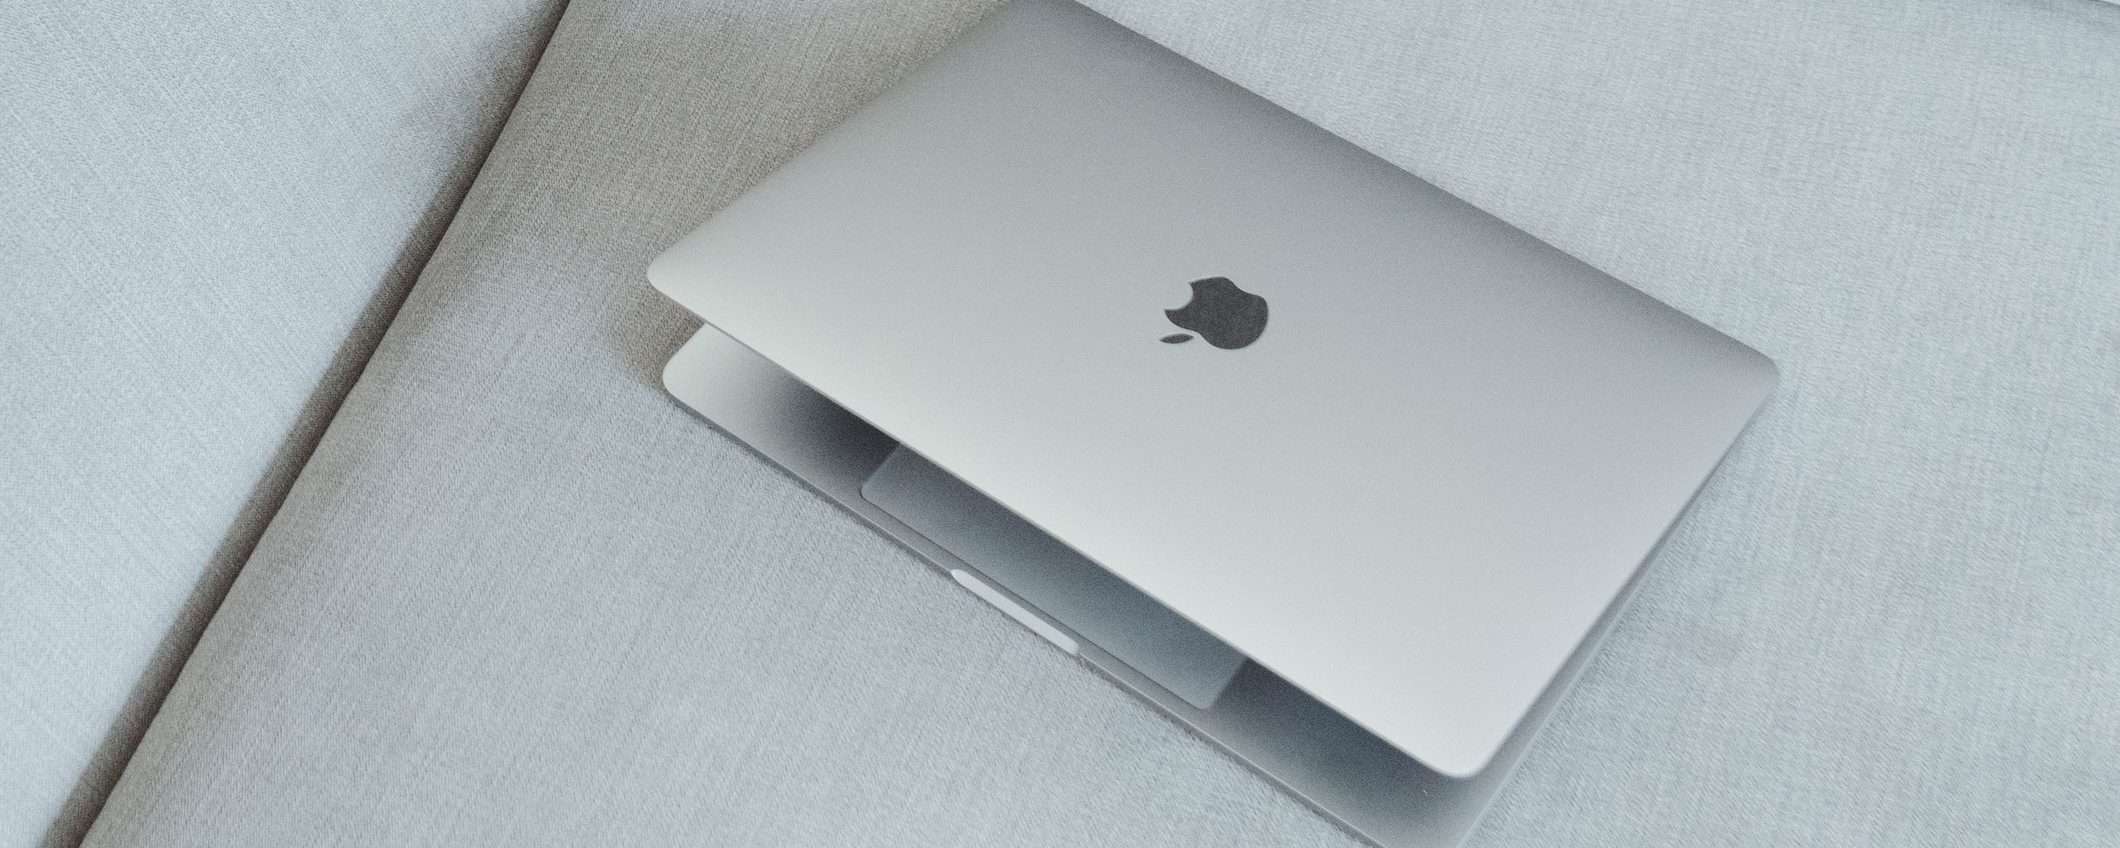 Apple: nessun nuovo Mac in un trimestre, prima volta dal 2000